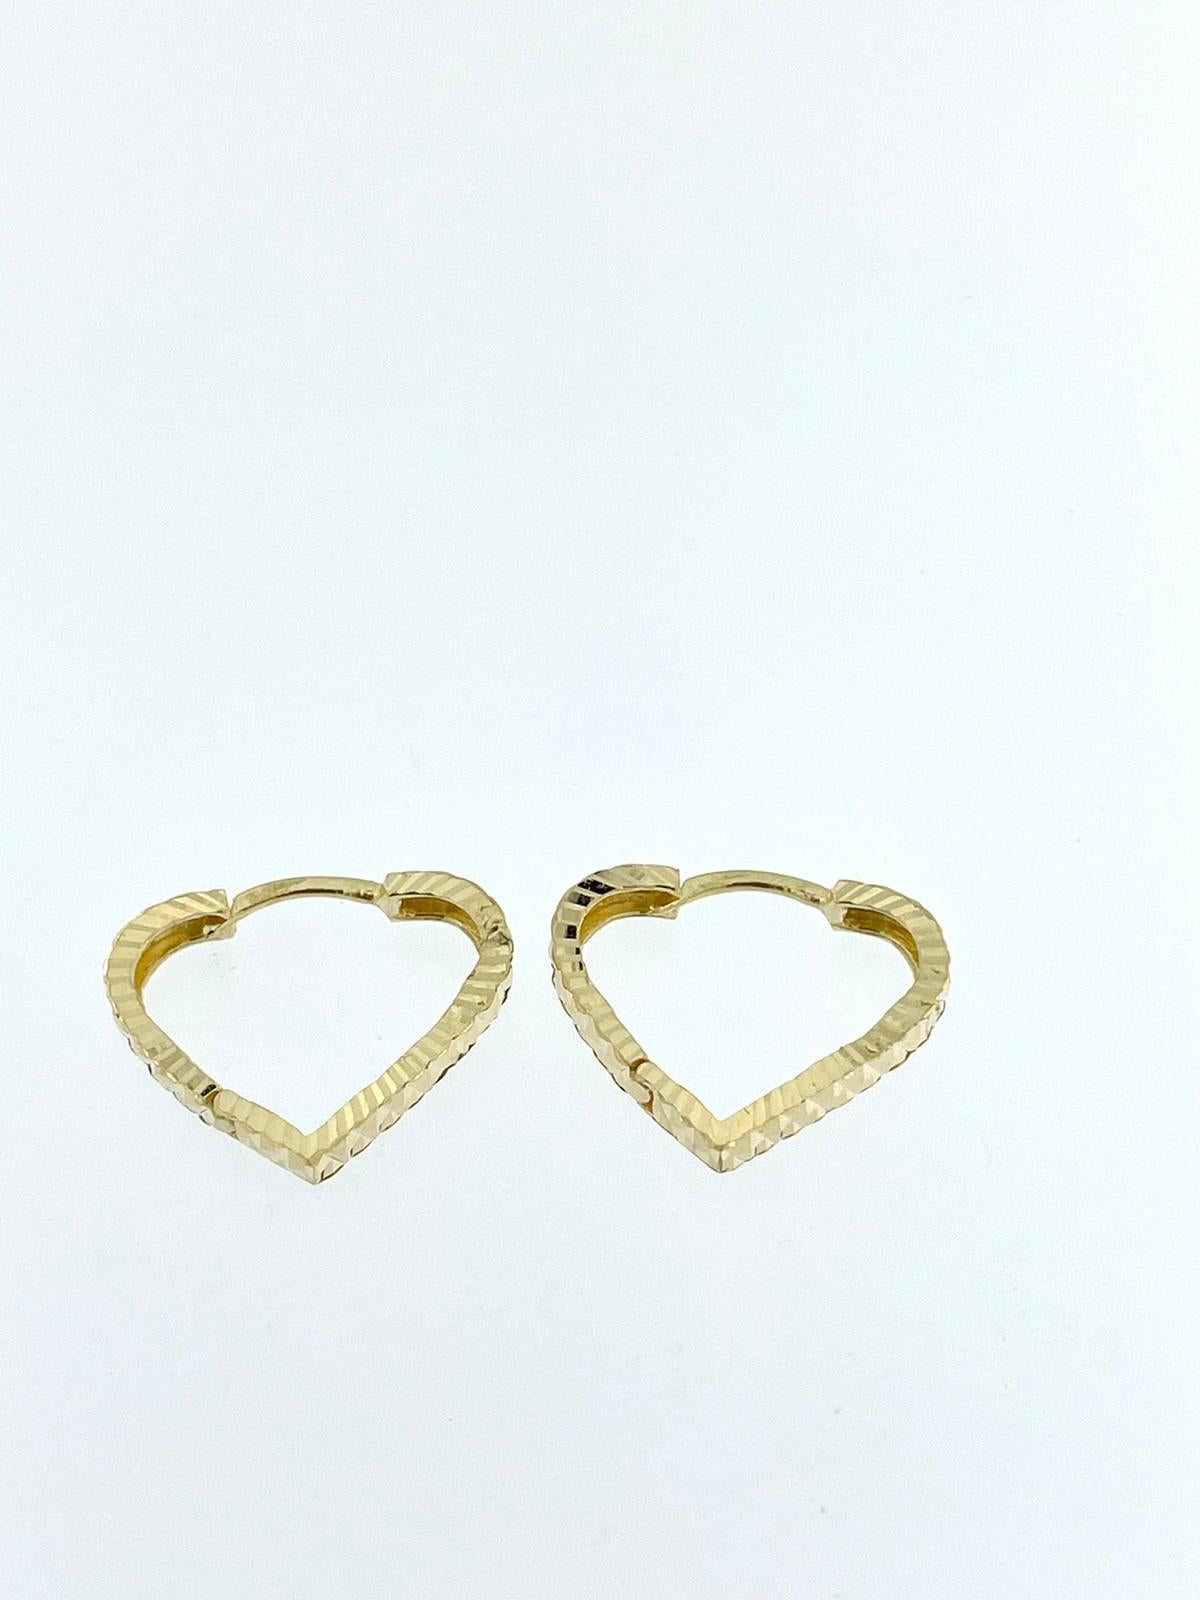 Die aus 18-karätigem Gold gefertigten herzförmigen Ohrringe aus Gelbgold bieten eine Mischung aus Charme und Raffinesse. Diese Ohrringe haben ein einzigartiges herzförmiges Reifendesign, das jedem Ensemble einen Hauch von Romantik verleiht.

Die